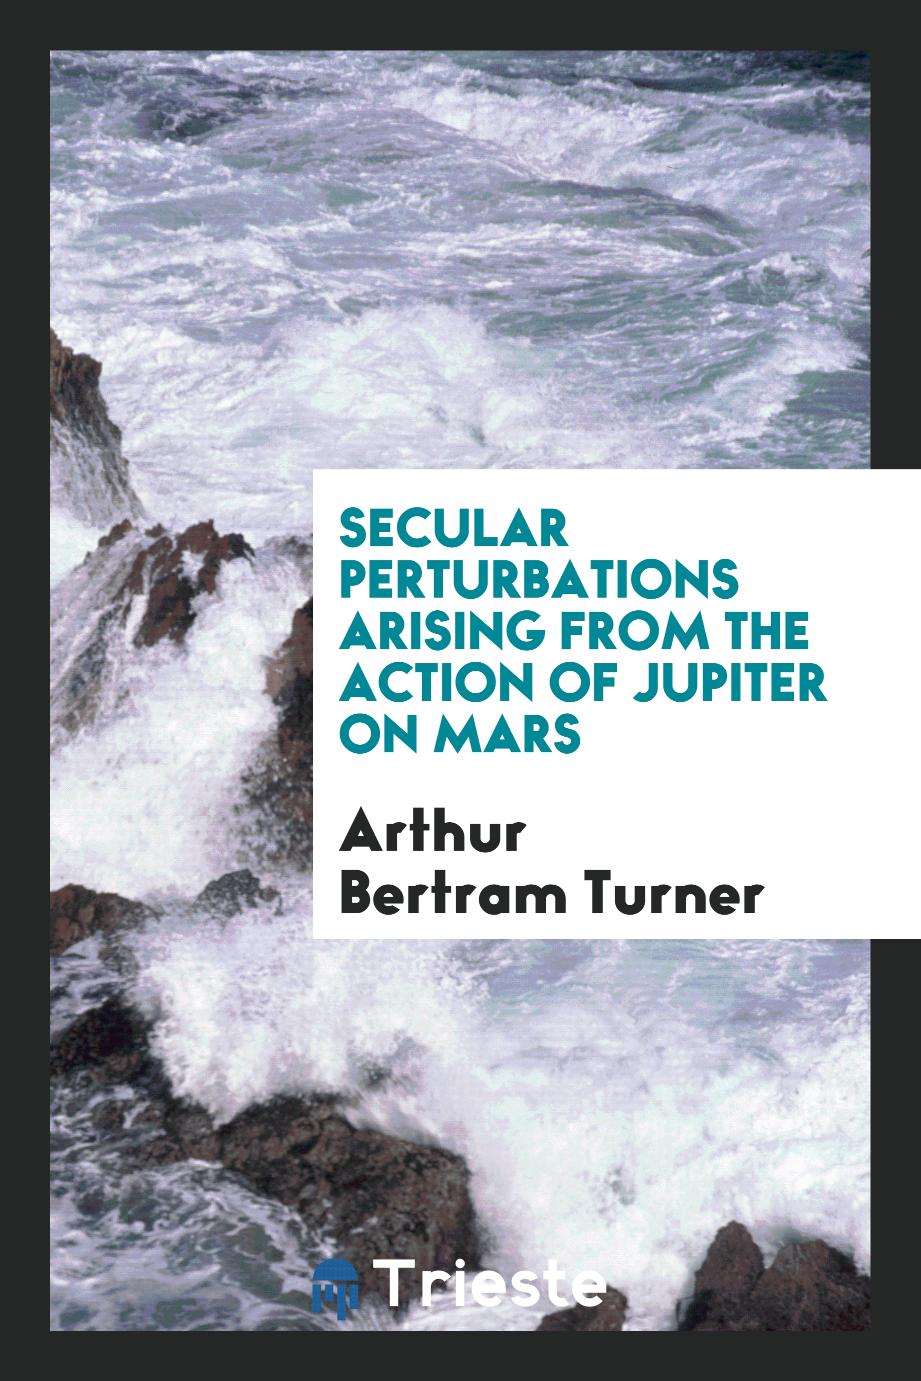 Secular perturbations arising from the action of Jupiter on Mars